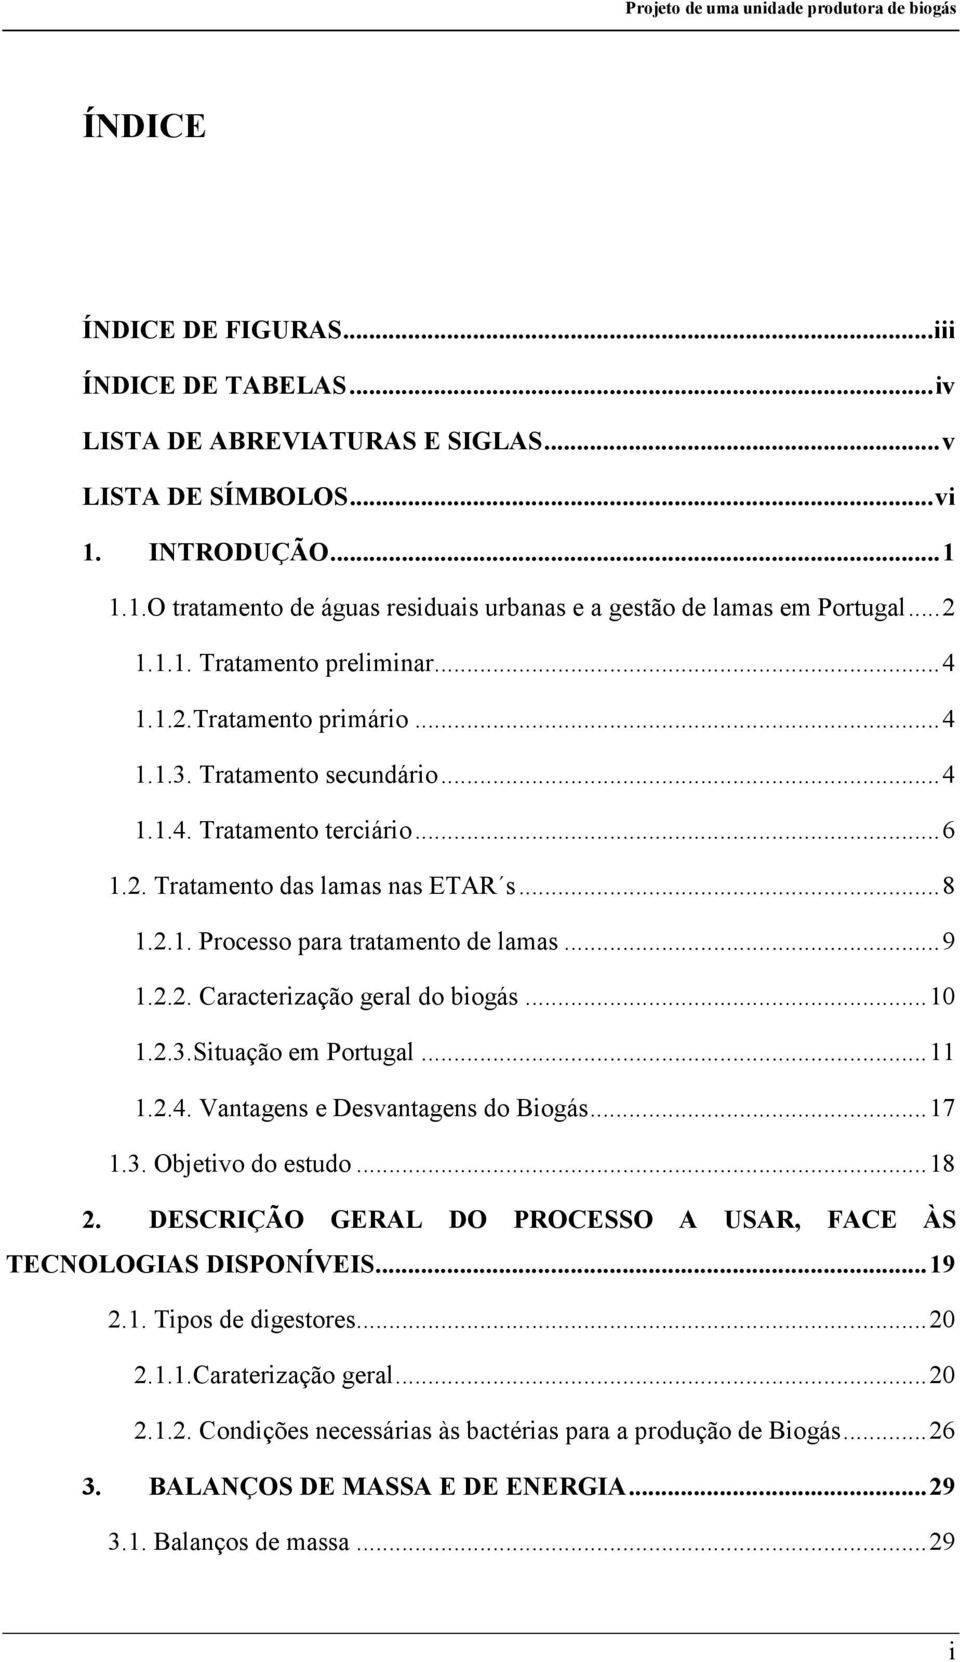 .. 9 1.2.2. Caracterização geral do biogás... 10 1.2.3.Situação em Portugal... 11 1.2.4. Vantagens e Desvantagens do Biogás... 17 1.3. Objetivo do estudo... 18 2.